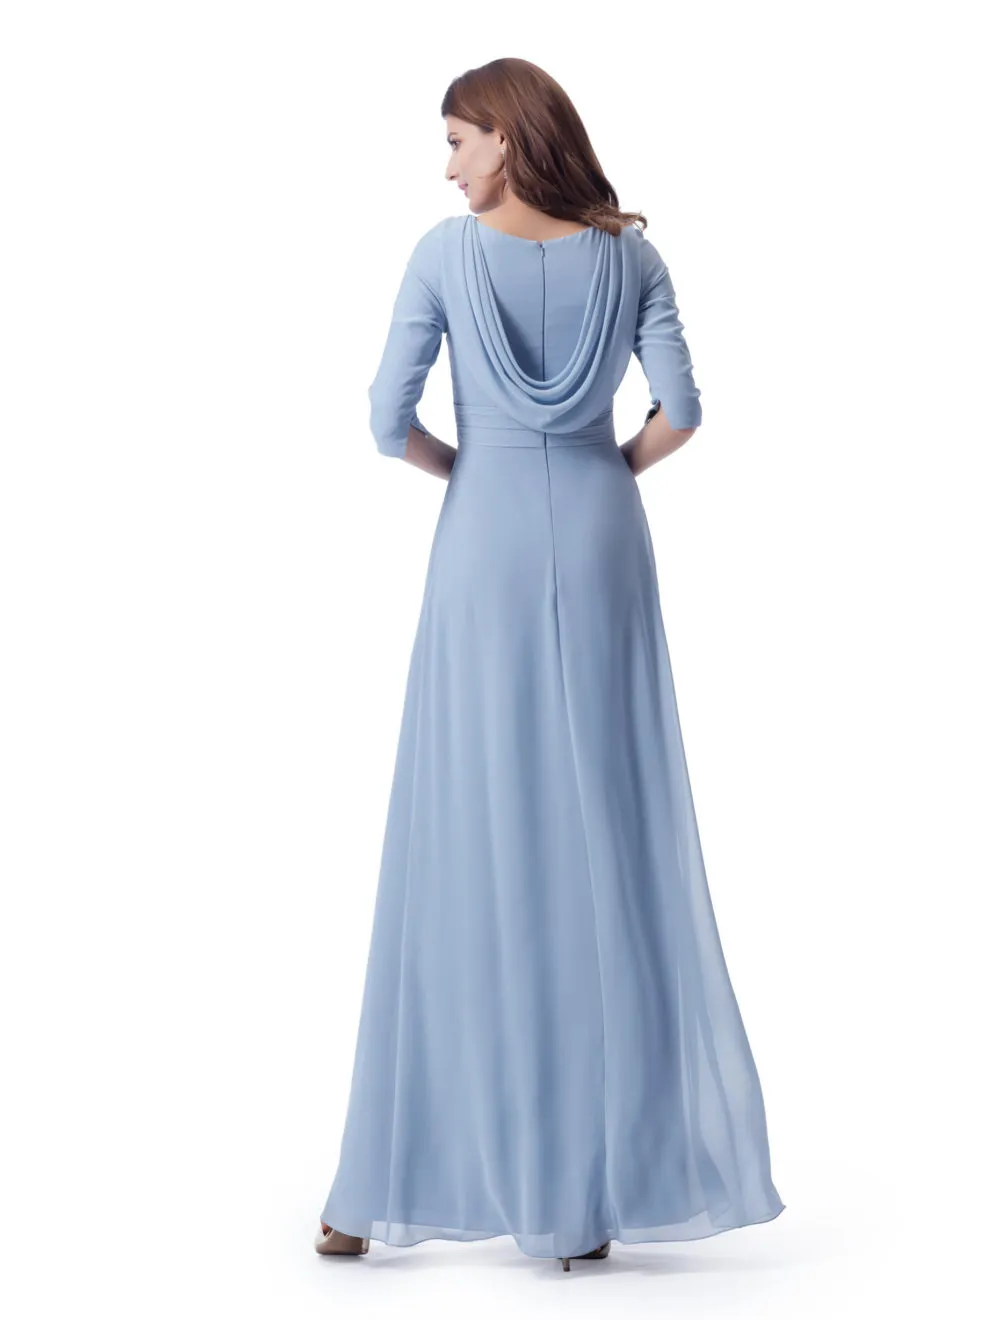 Pastal Niebieski Długie Skromne Suknie Druhna z 34 Rękawami Ruched Szyfonowa Długość Kostka Formalna Party Wedding Dresses LDS Maids of Honor Dress